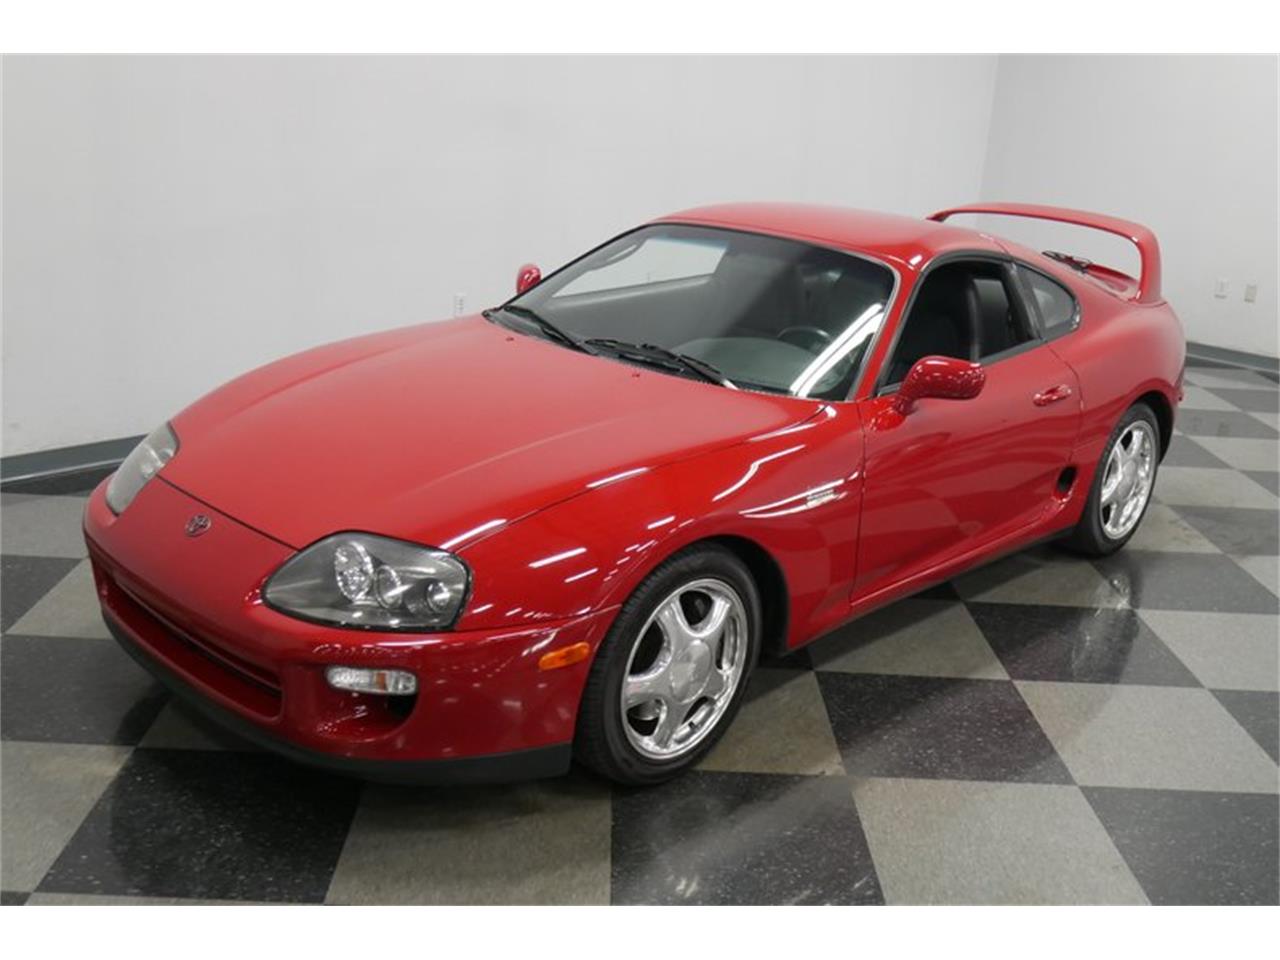 1997 Toyota Supra for Sale | ClassicCars.com | CC-1230127